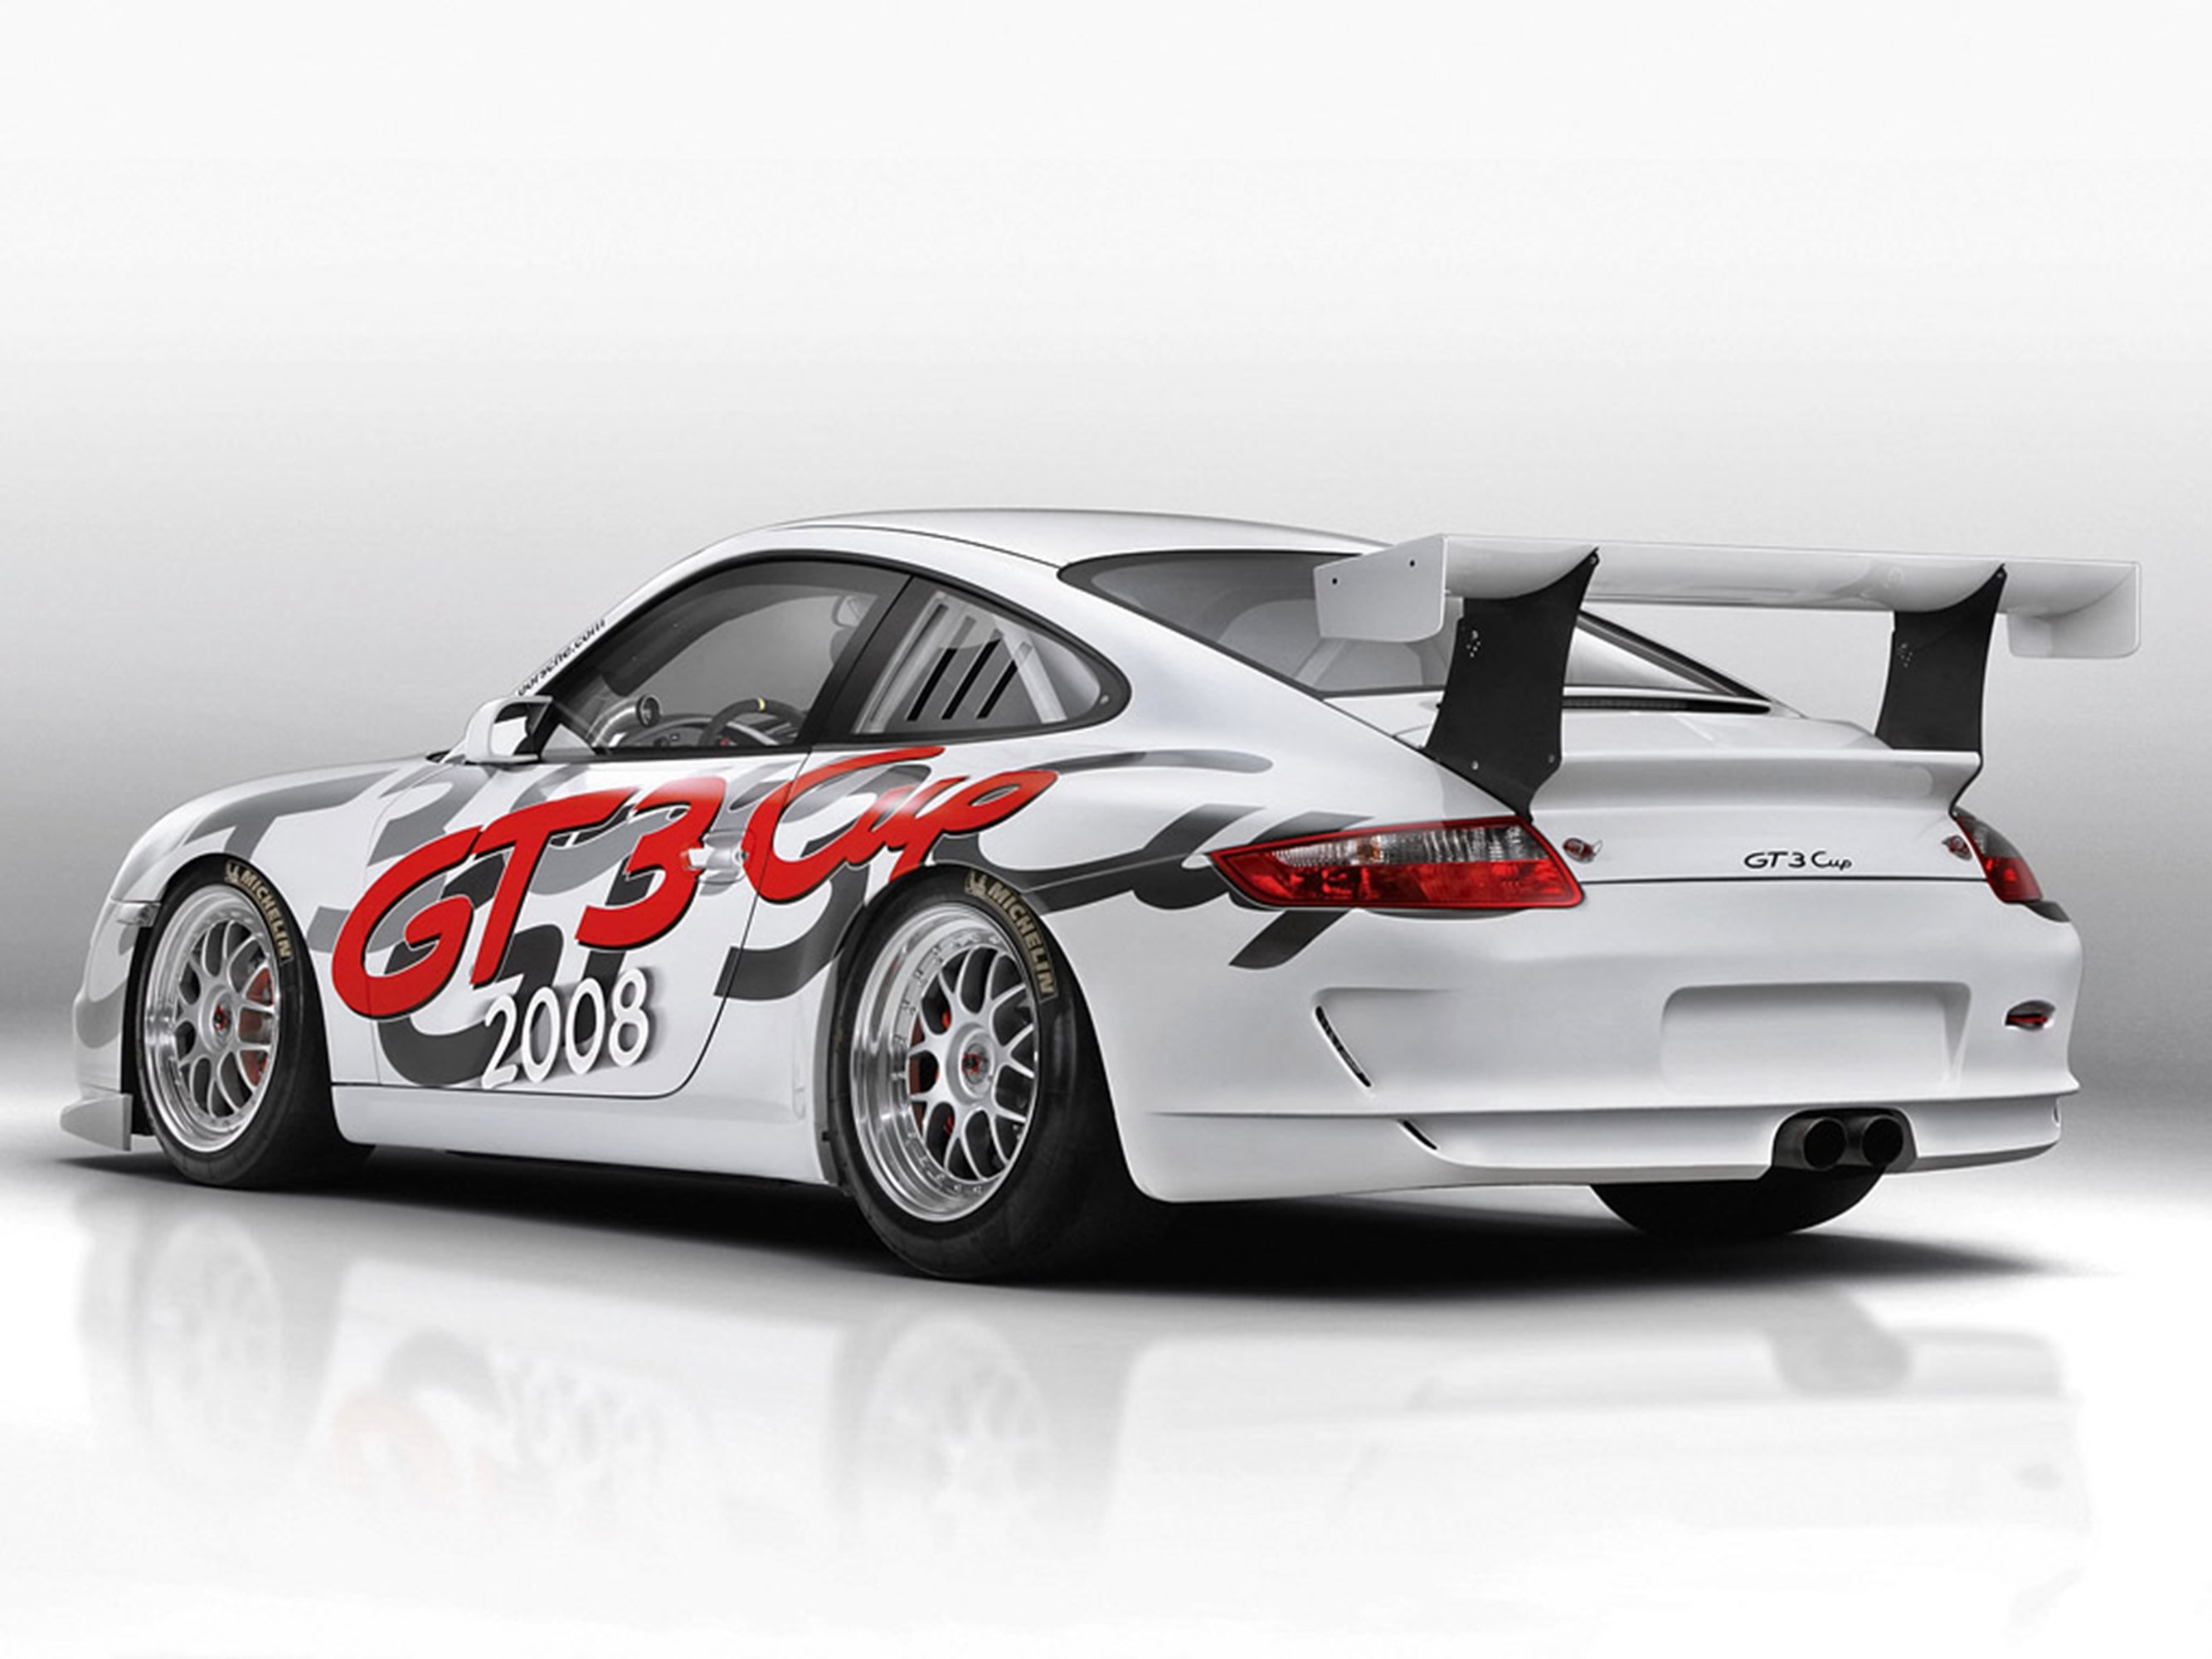 2007, Porsche, 911gt3cup3, 2667x2000 Wallpaper